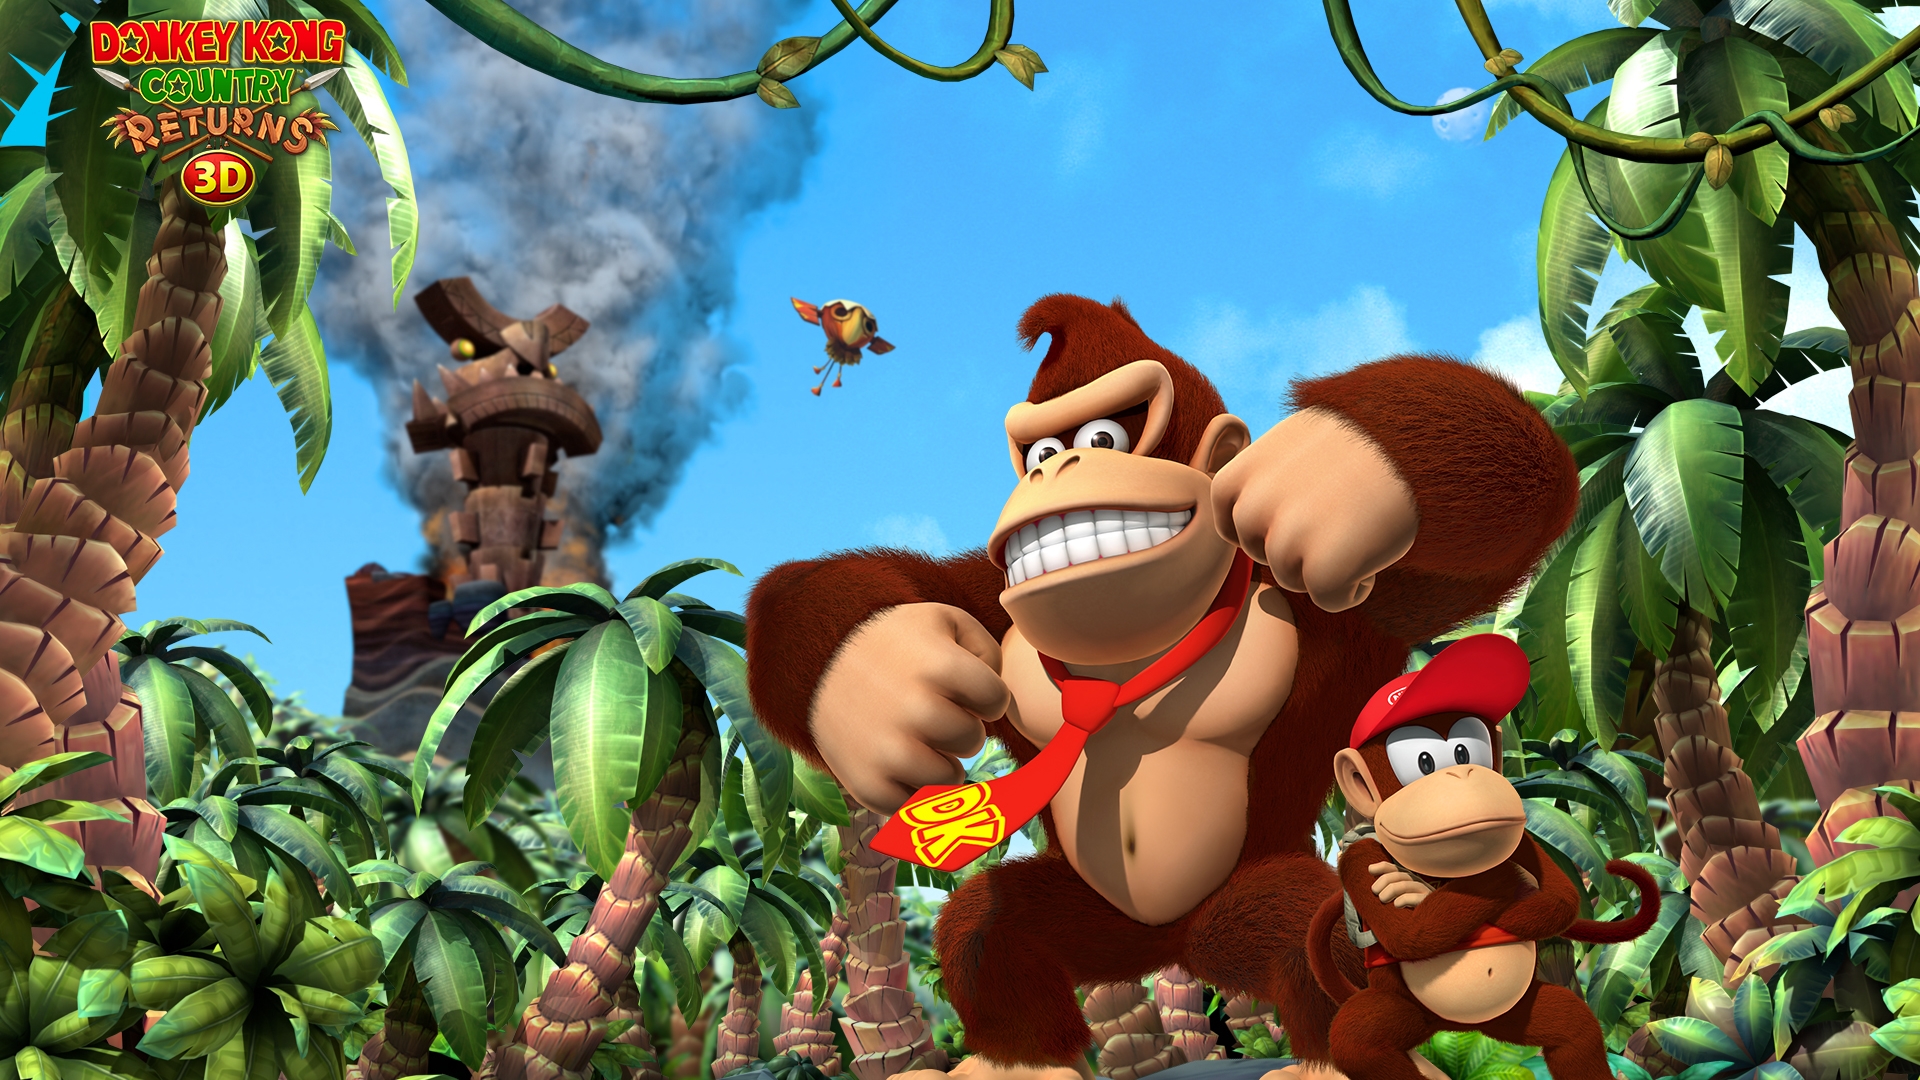 Los mejores fondos de pantalla de El Regreso Del País De Donkey Kong 3D para la pantalla del teléfono